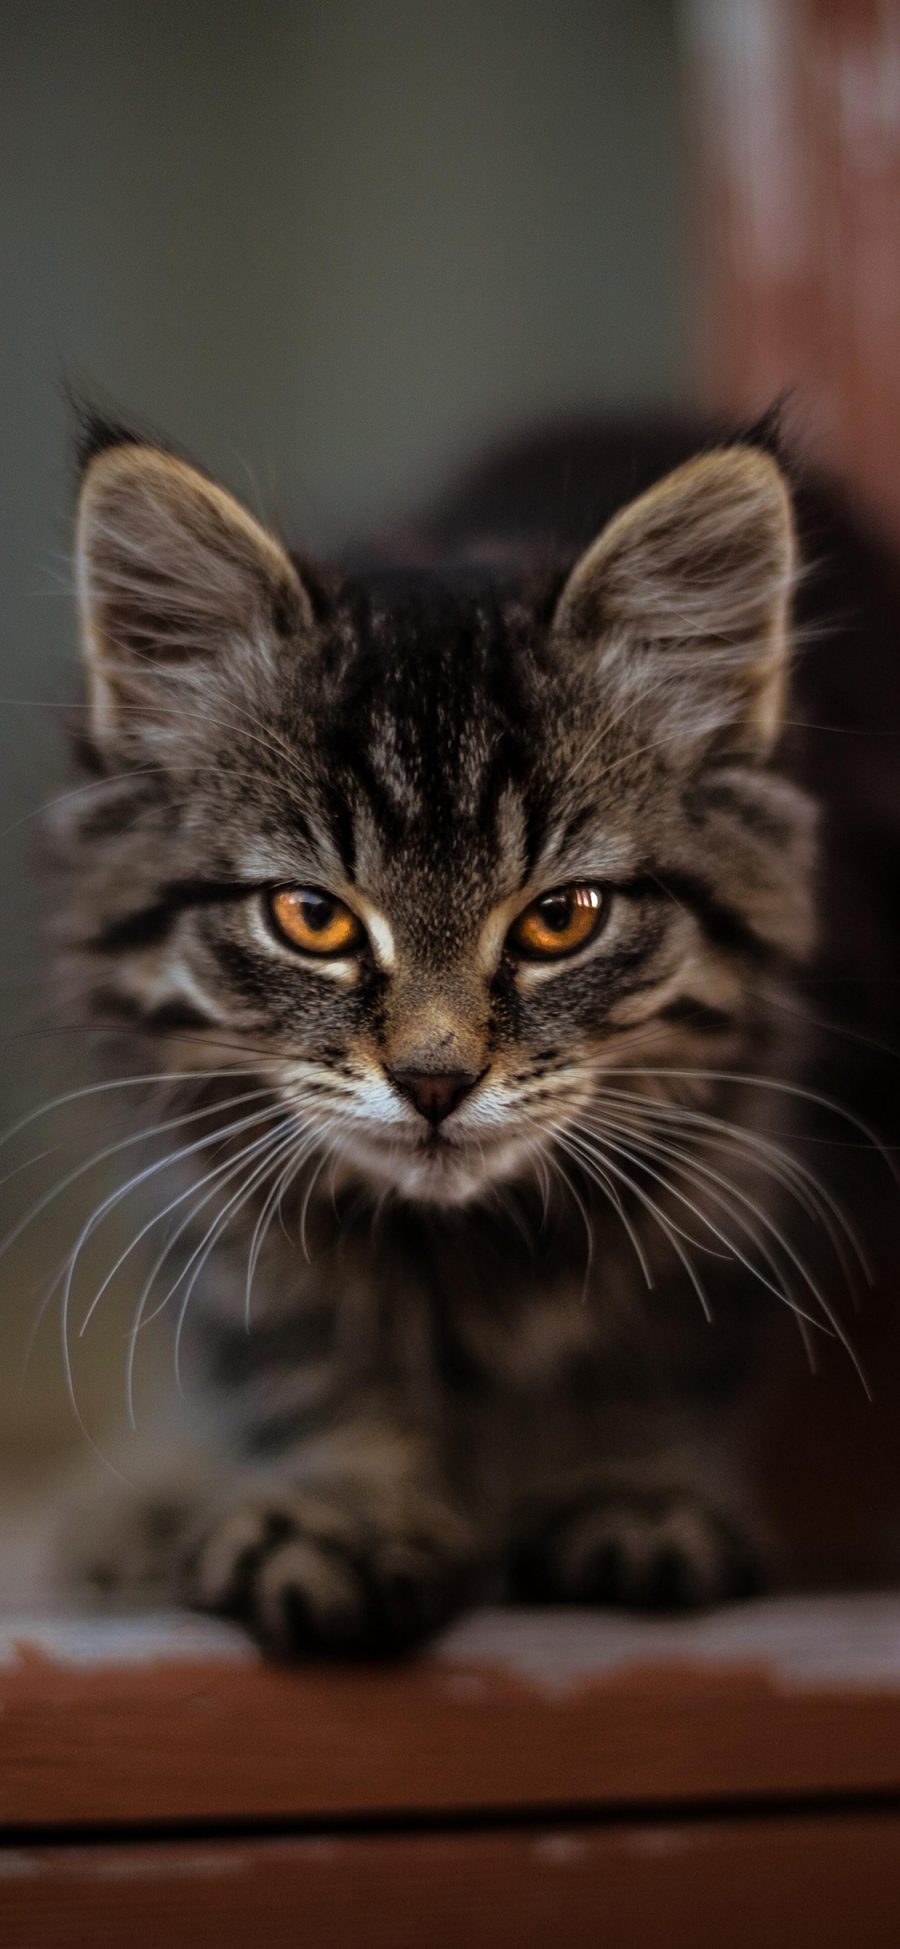 [2436×1125]猞猁 猫科 凶猛 保护动物 苹果手机壁纸图片